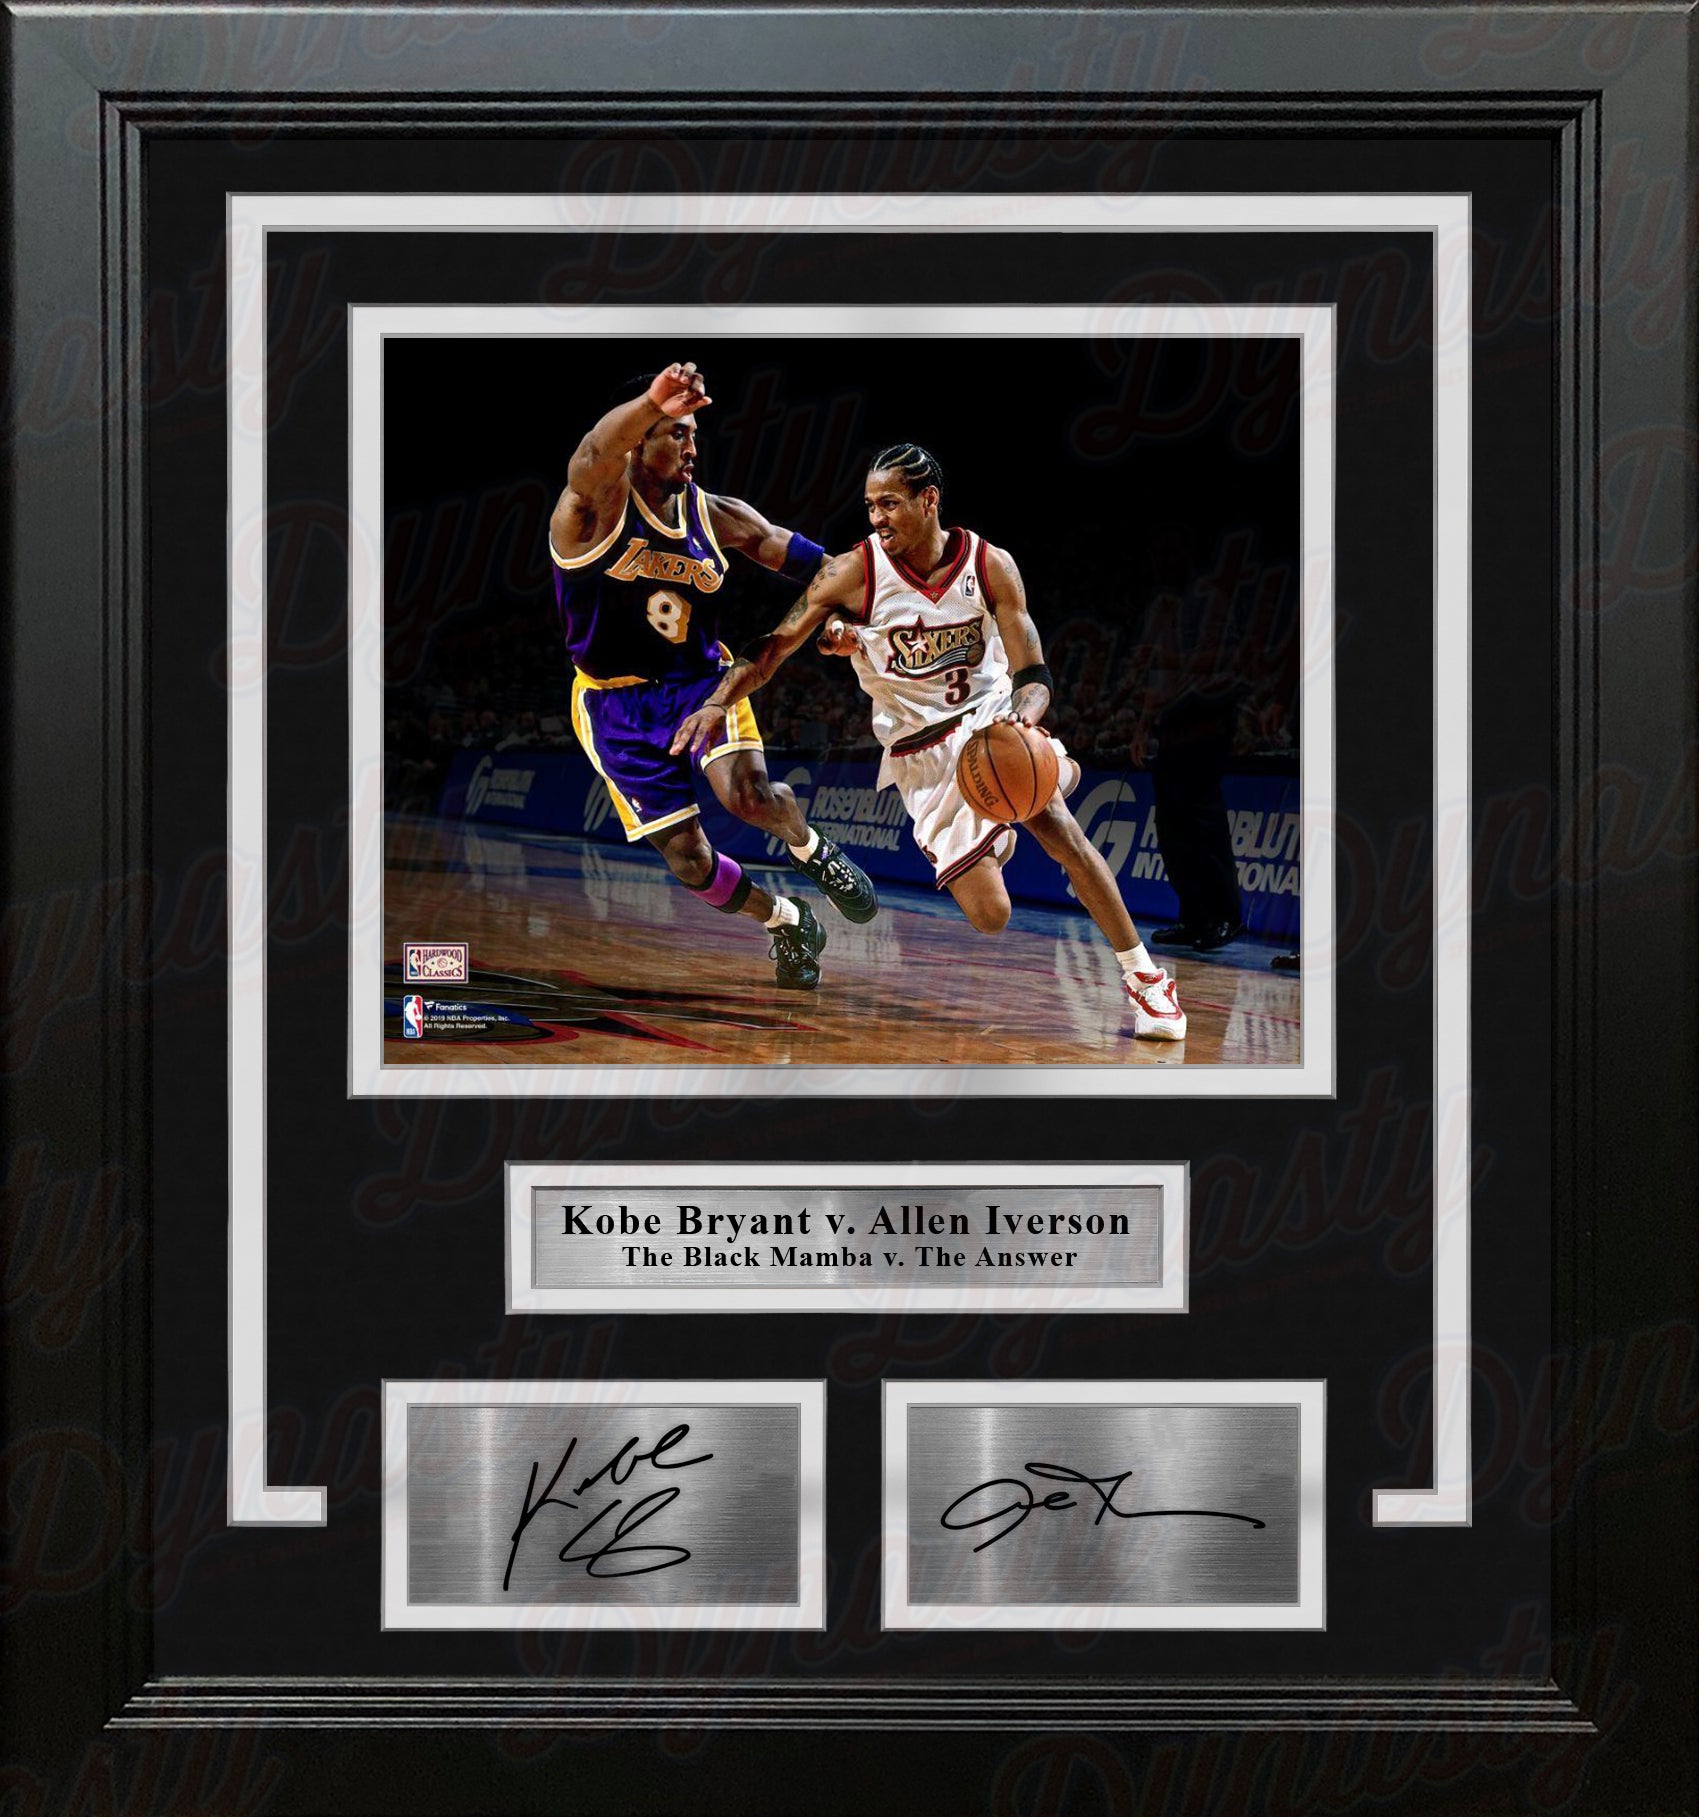 Allen Iverson Philadelphia 76ers Fanatics Authentic Autographed 8 x 10 vs. Kobe Photograph